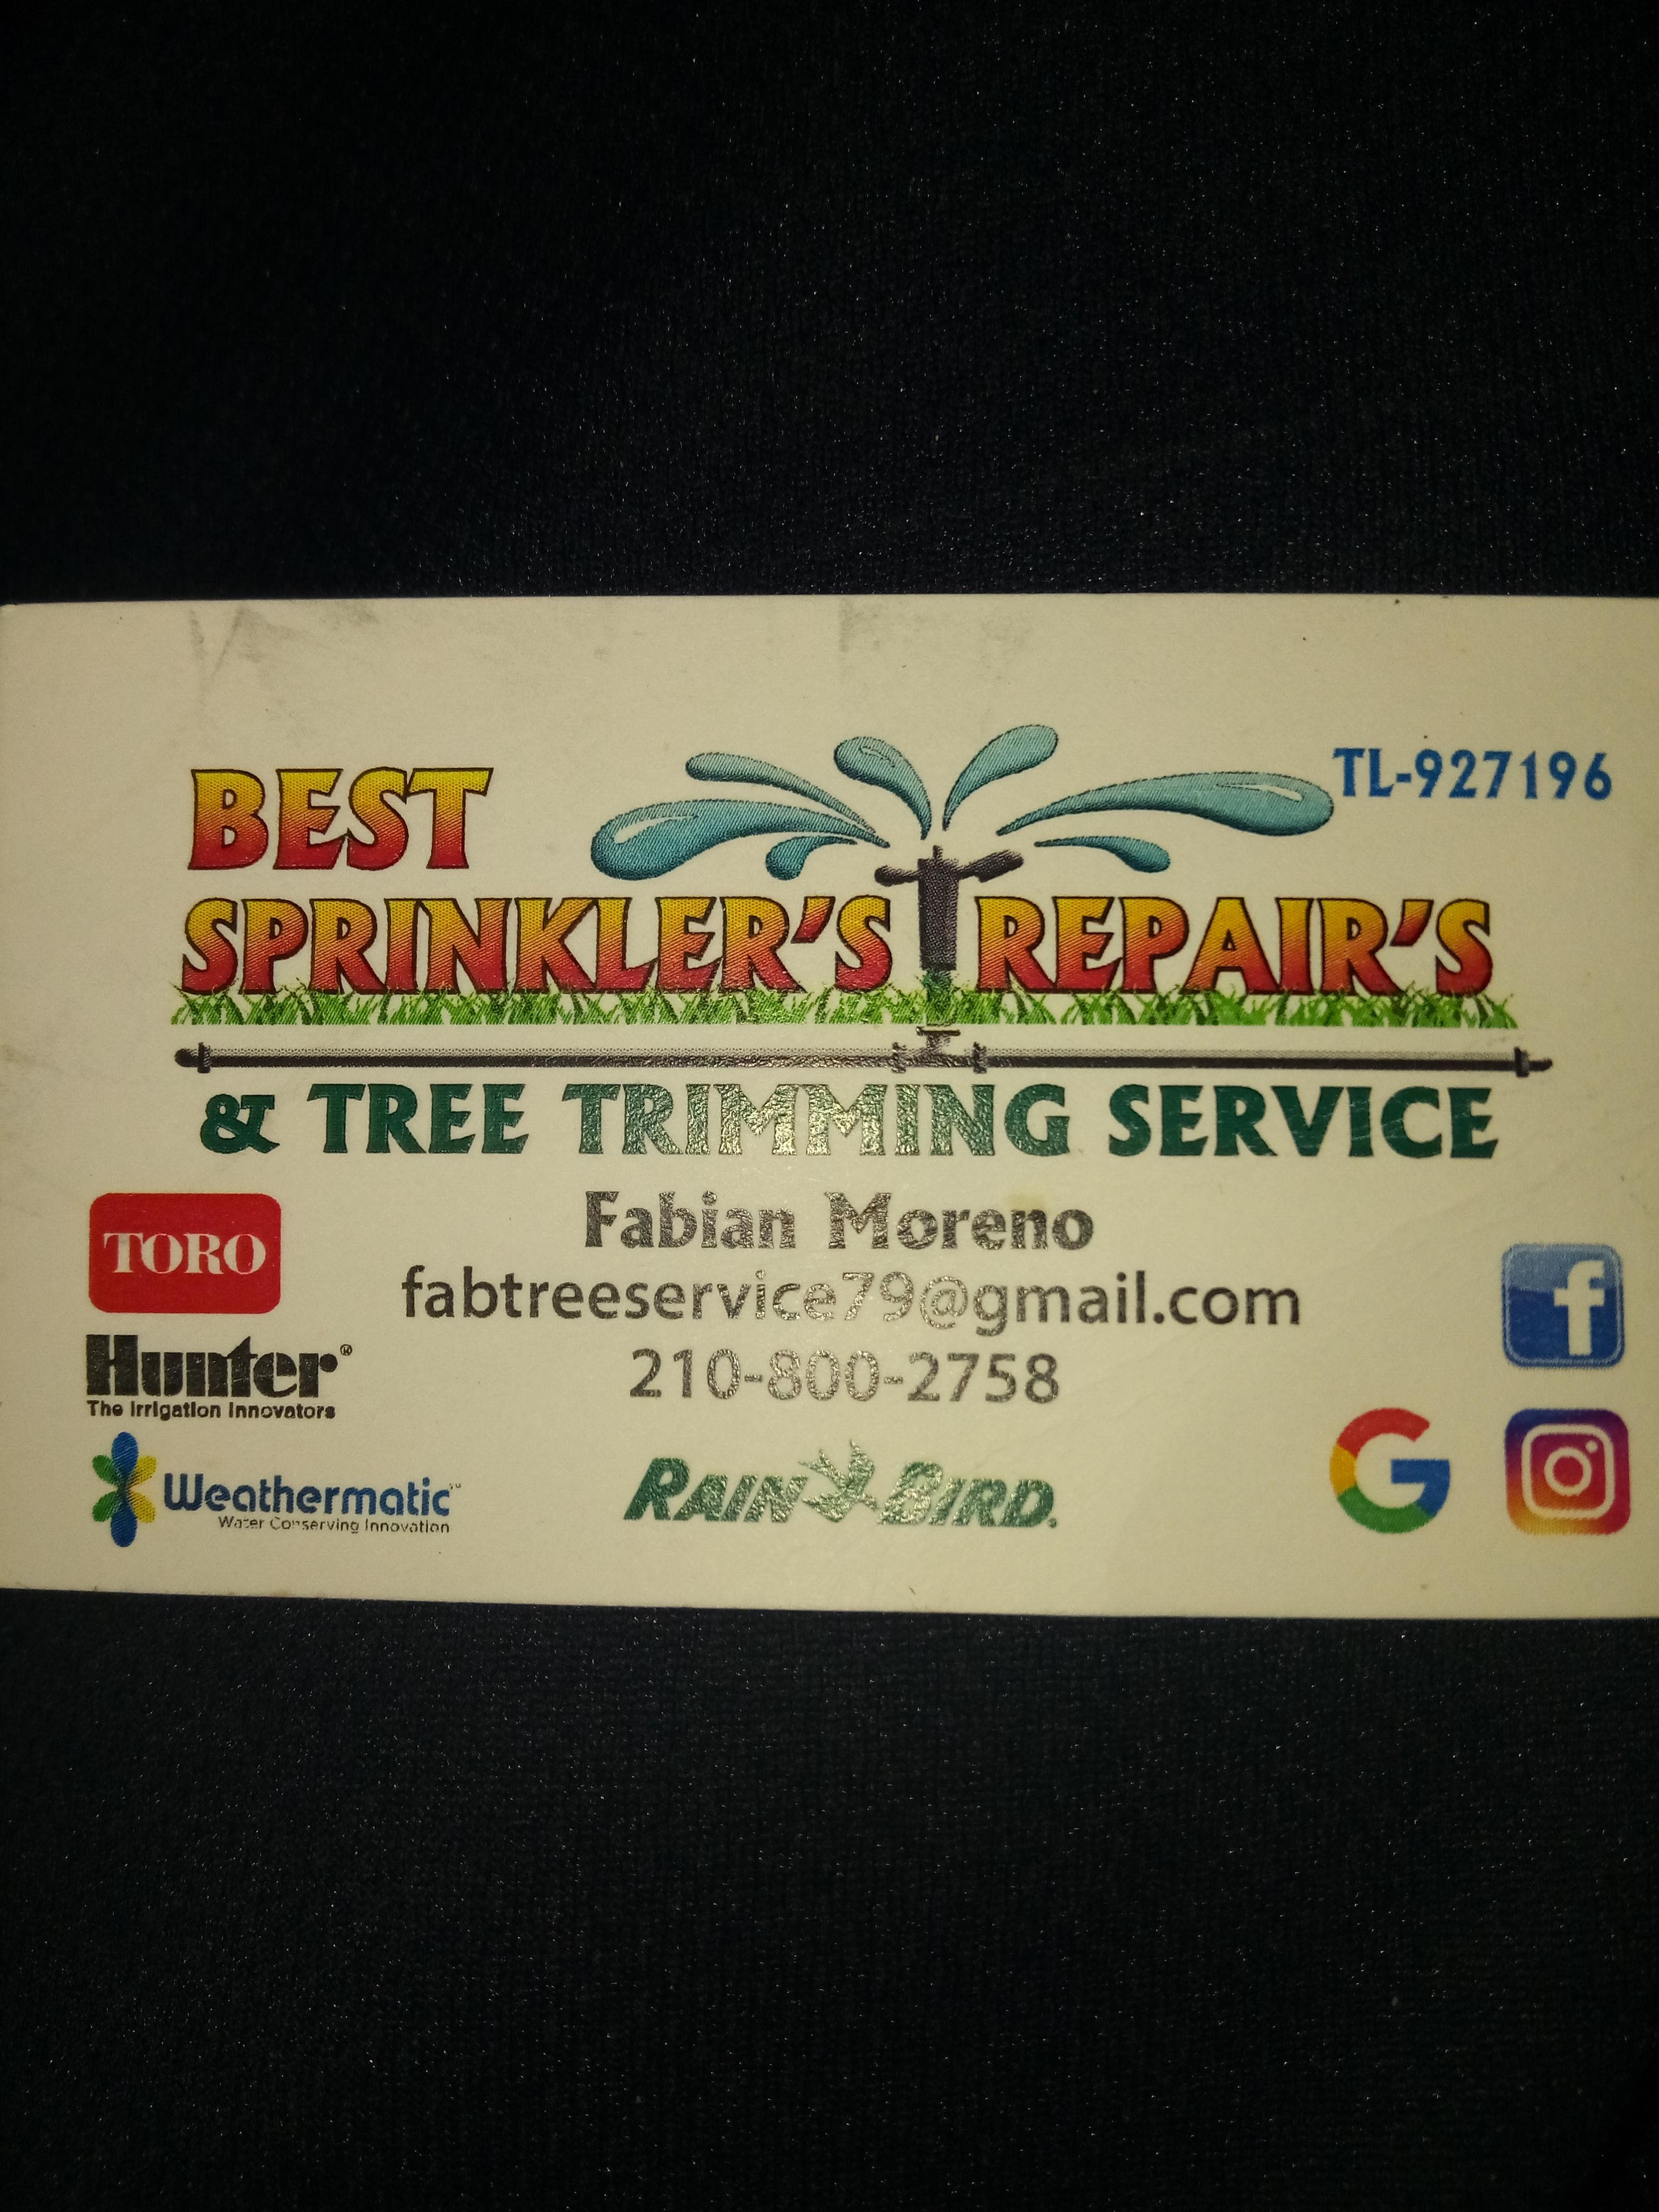 Best Sprinklers Repairs & Tree Trimming Service